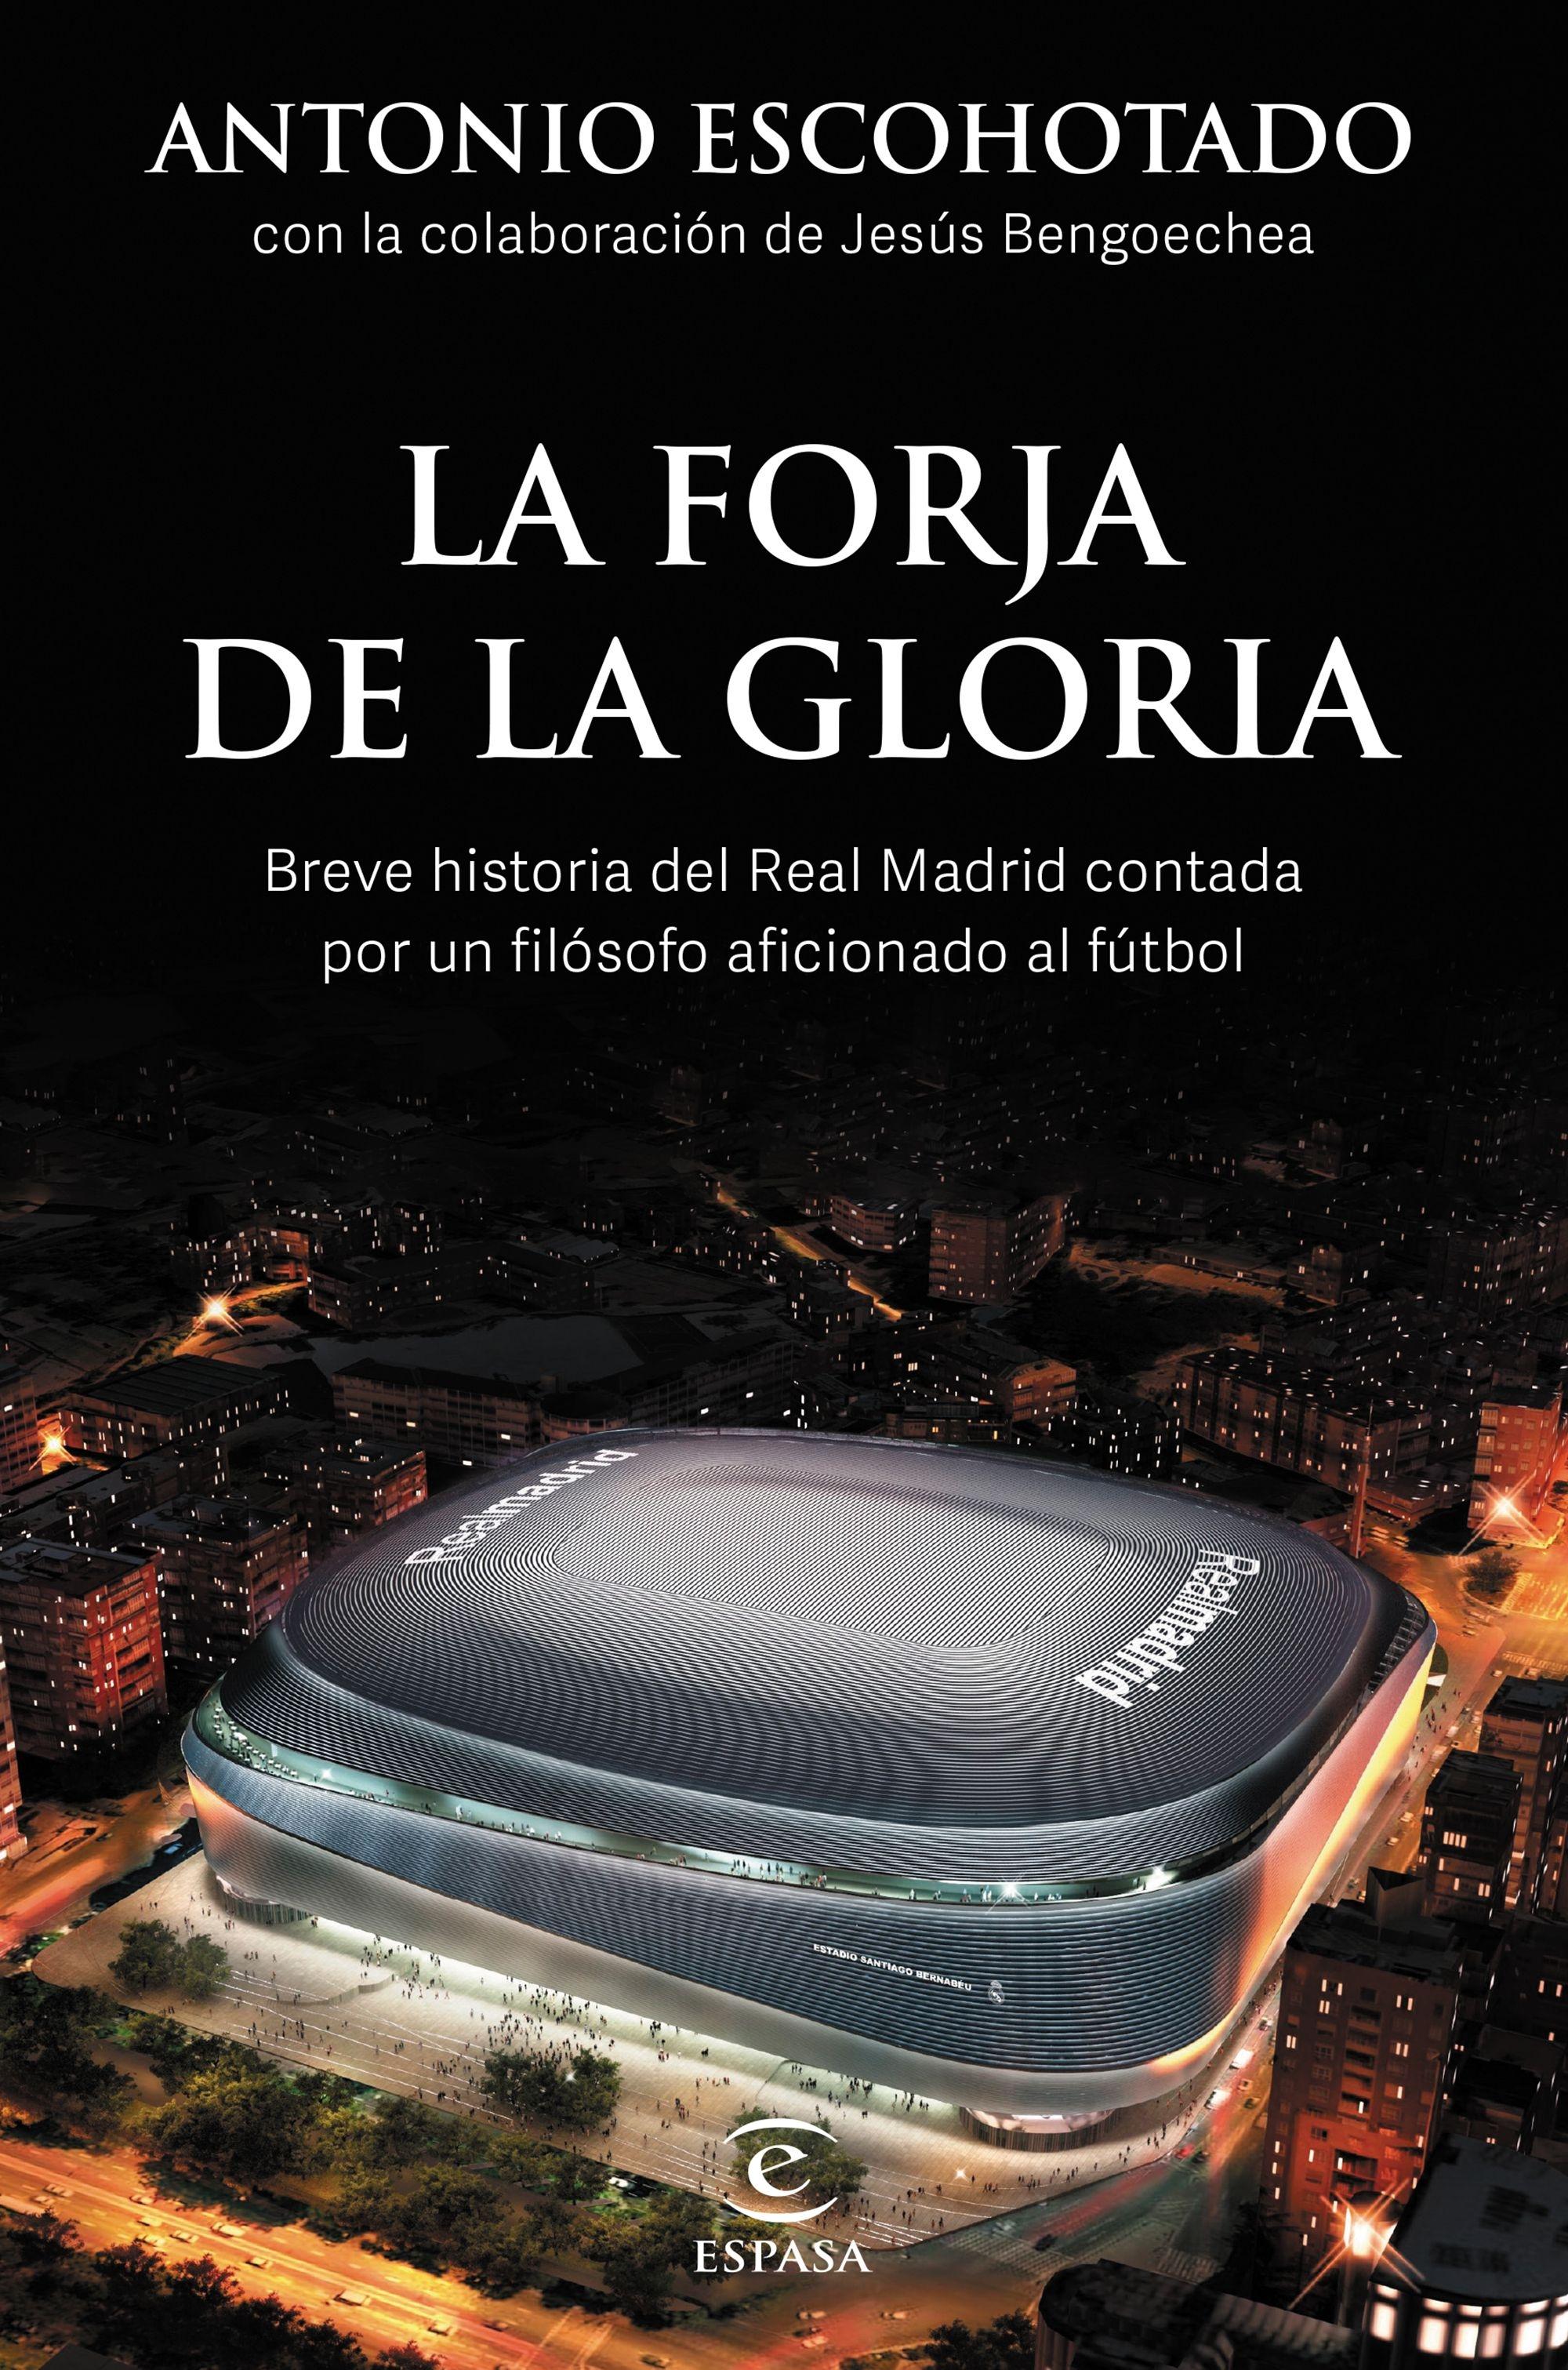 La forja de la gloria "Breve historia del Real Madrid contada por un filósofo aficionado al fút"